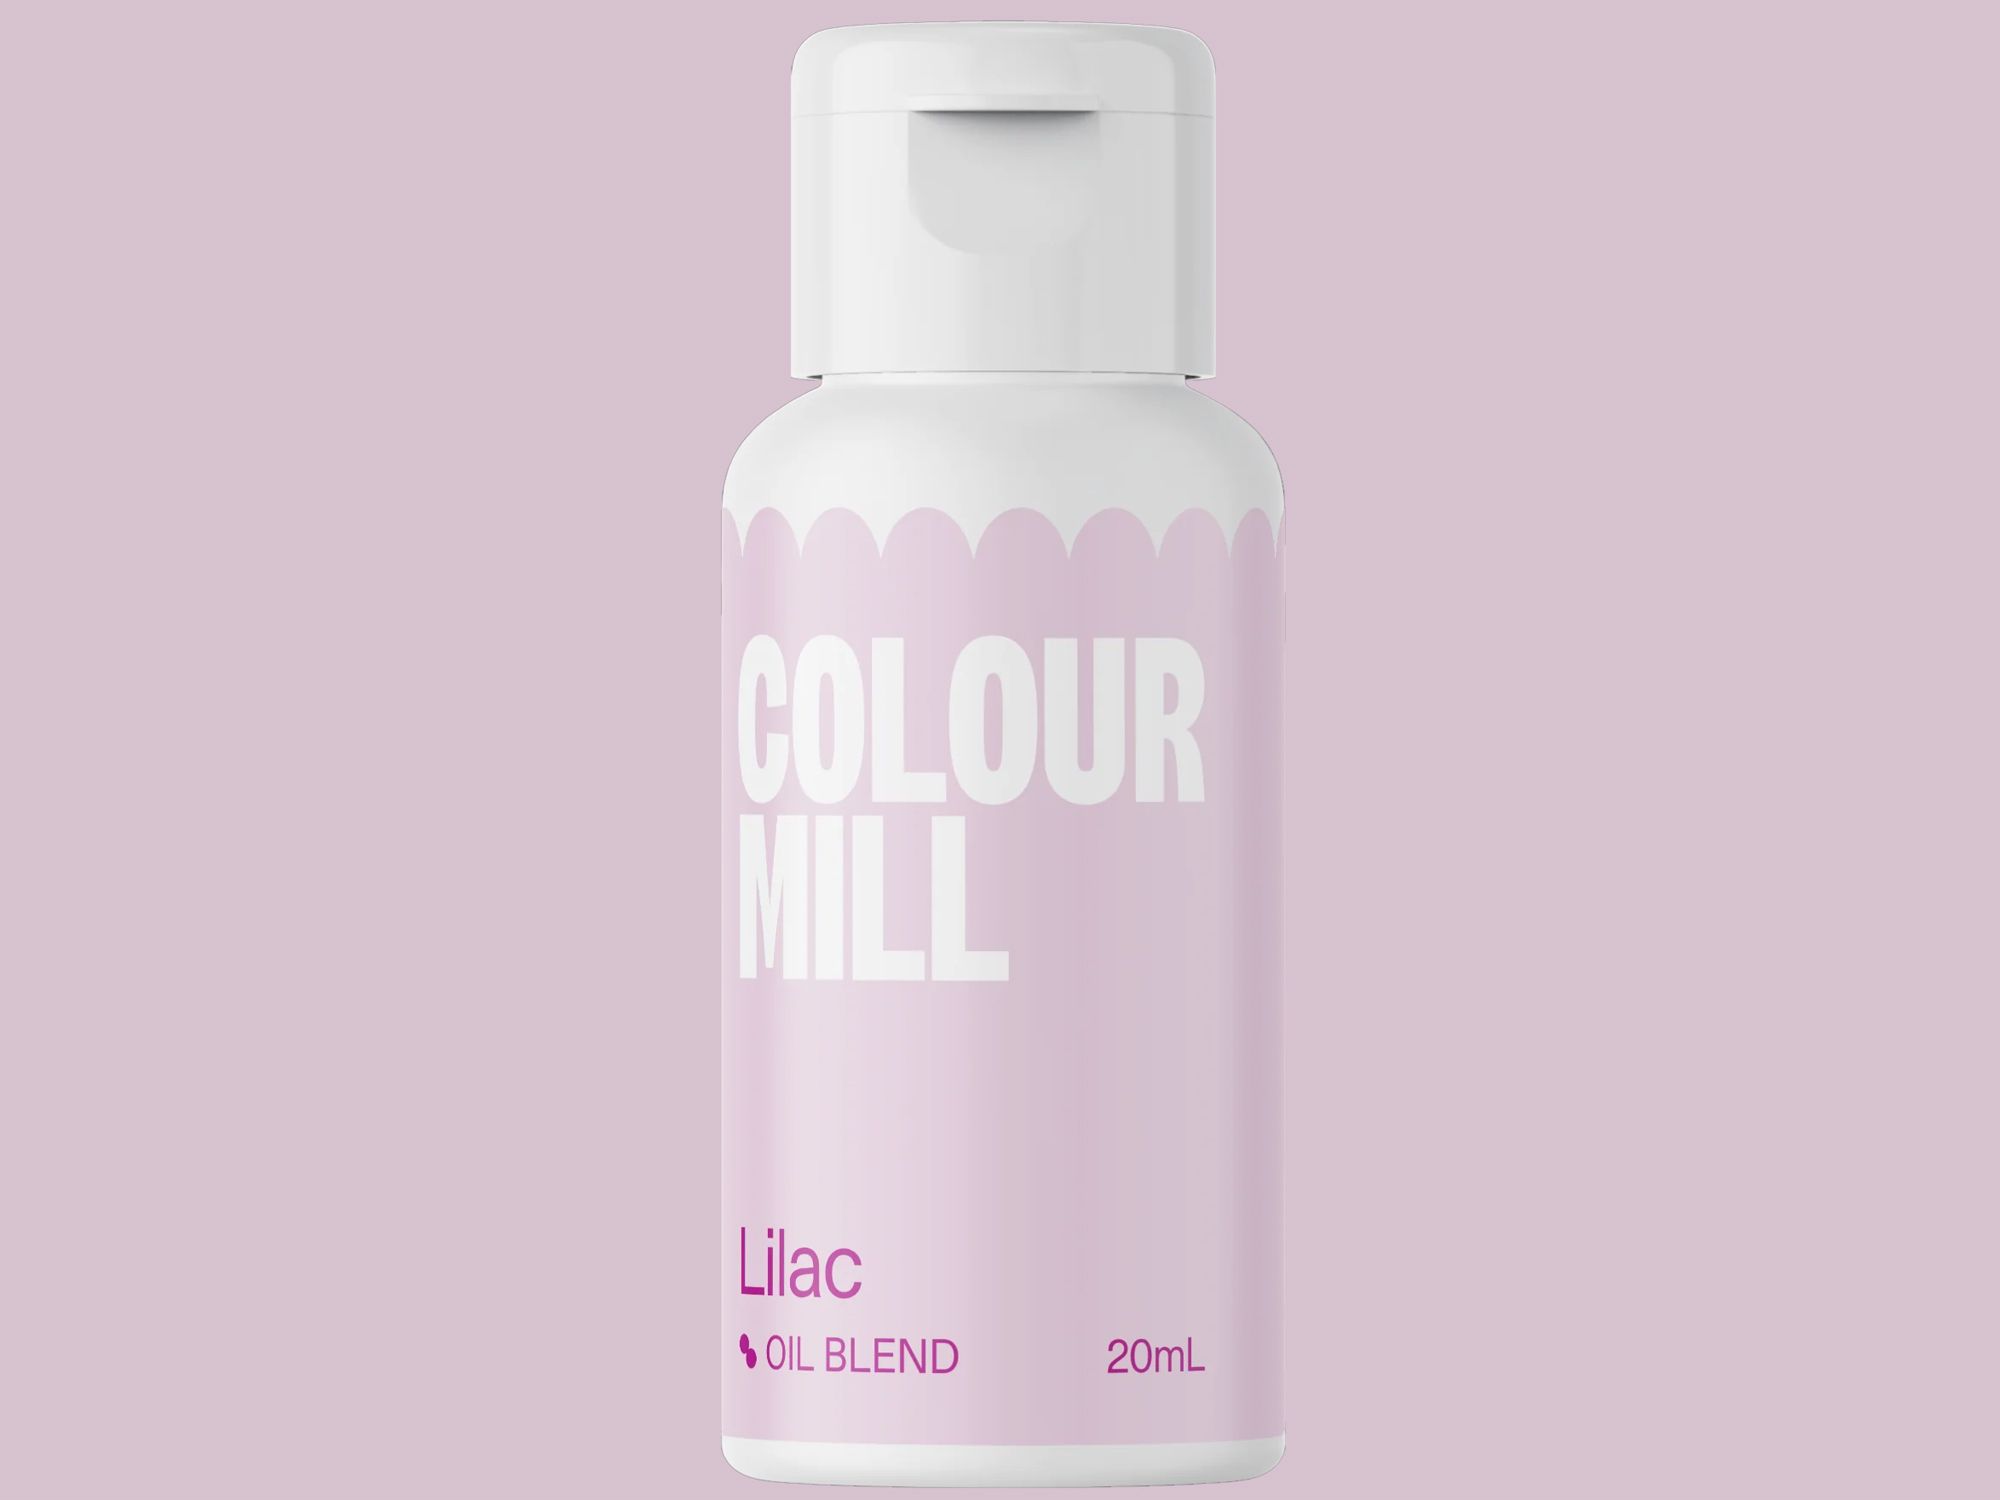 Colour Mill Lilac (Oil Blend) 20ml